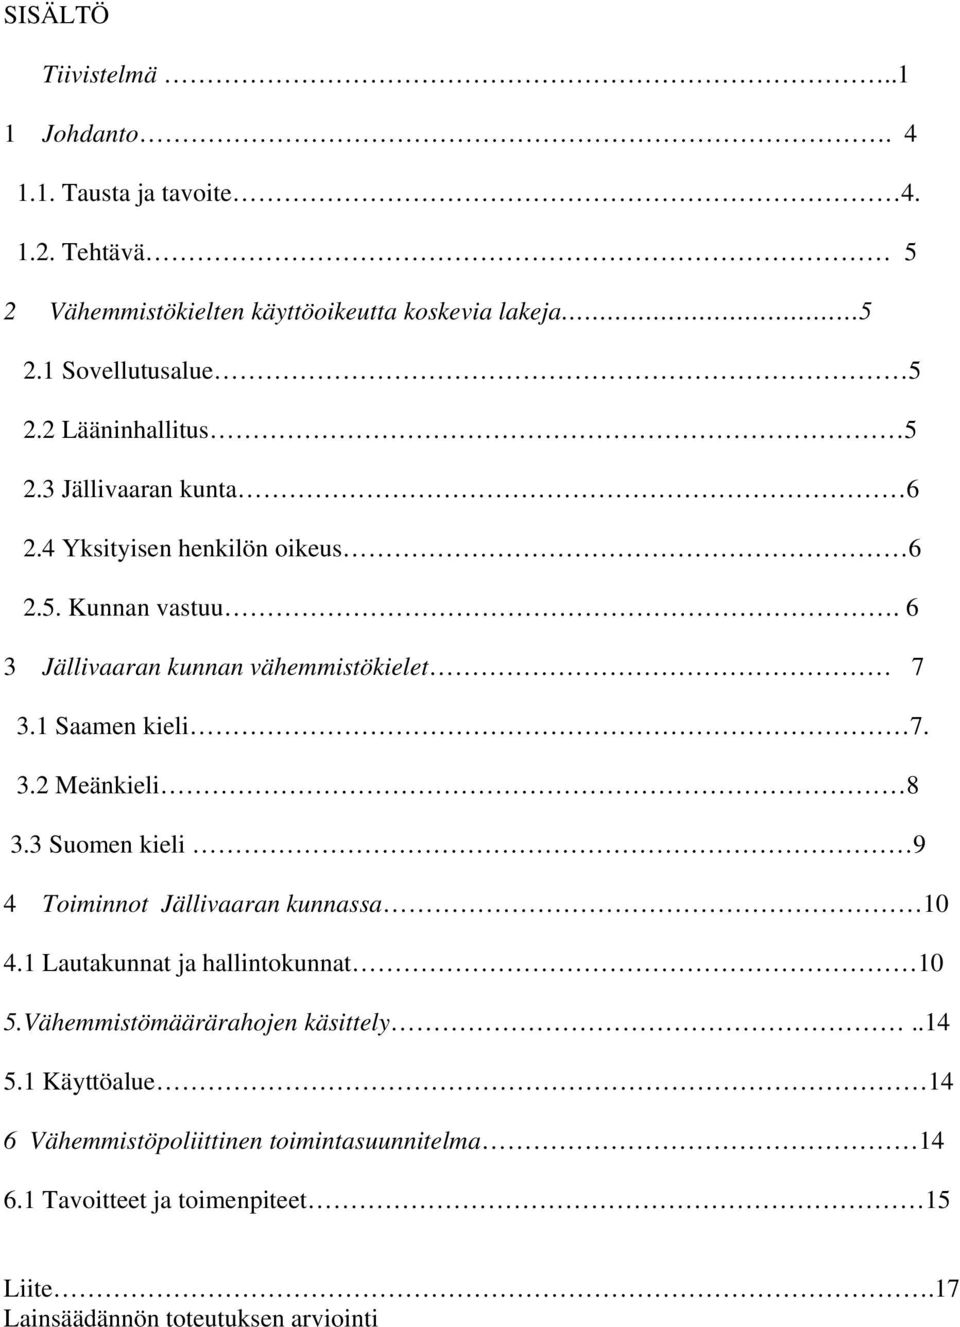 6 3 Jällivaaran kunnan vähemmistökielet 7 3.1 Saamen kieli 7. 3.2 Meänkieli 8 3.3 Suomen kieli 9 4 Toiminnot Jällivaaran kunnassa 10 4.